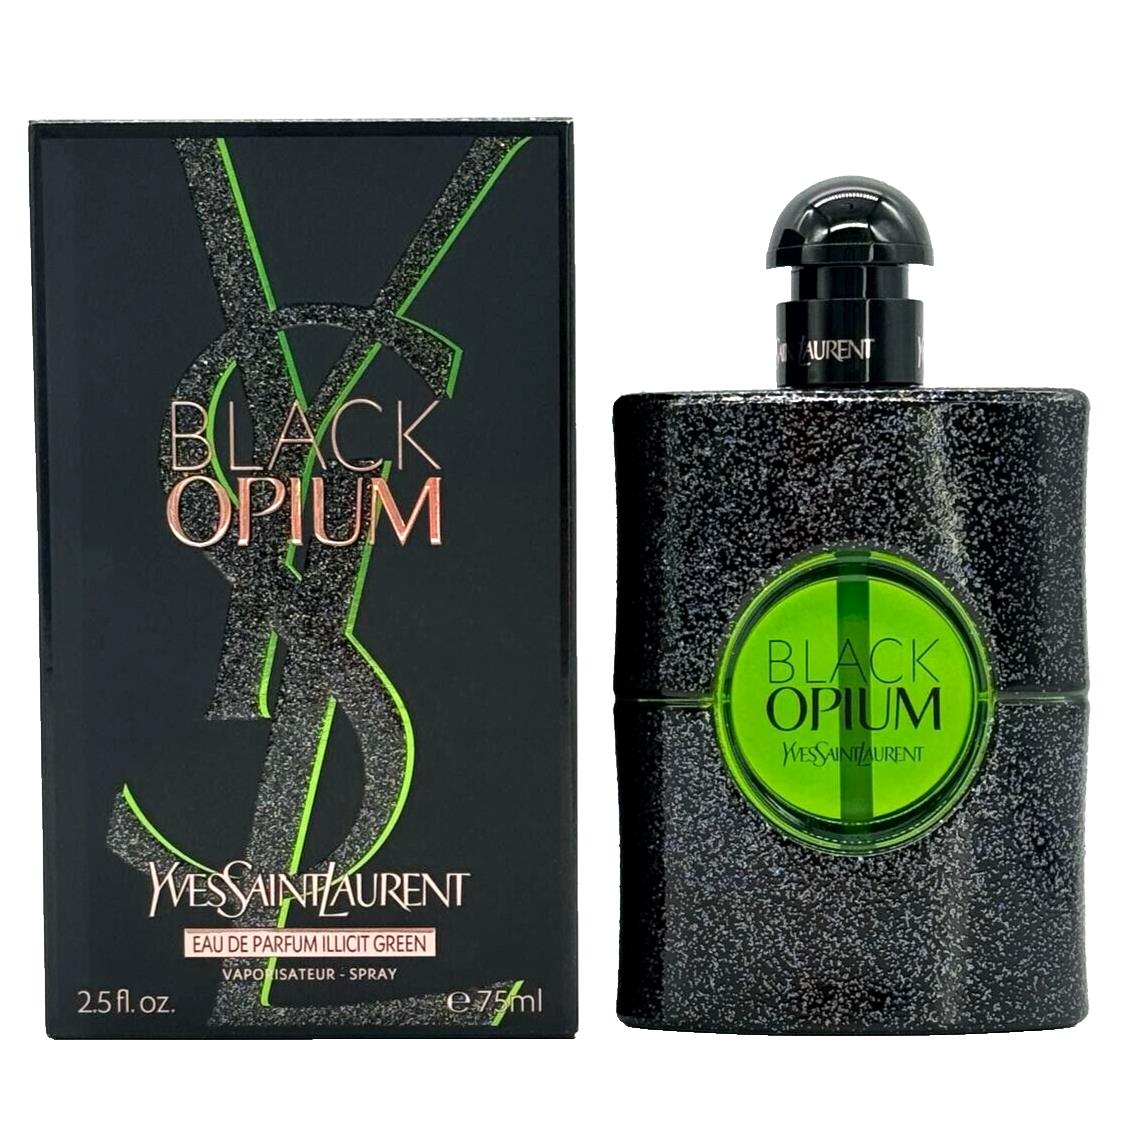 Ysl Black Opium Illicit Green by Yves Saint Laurent 2.5 oz Eau de Parfum Spray